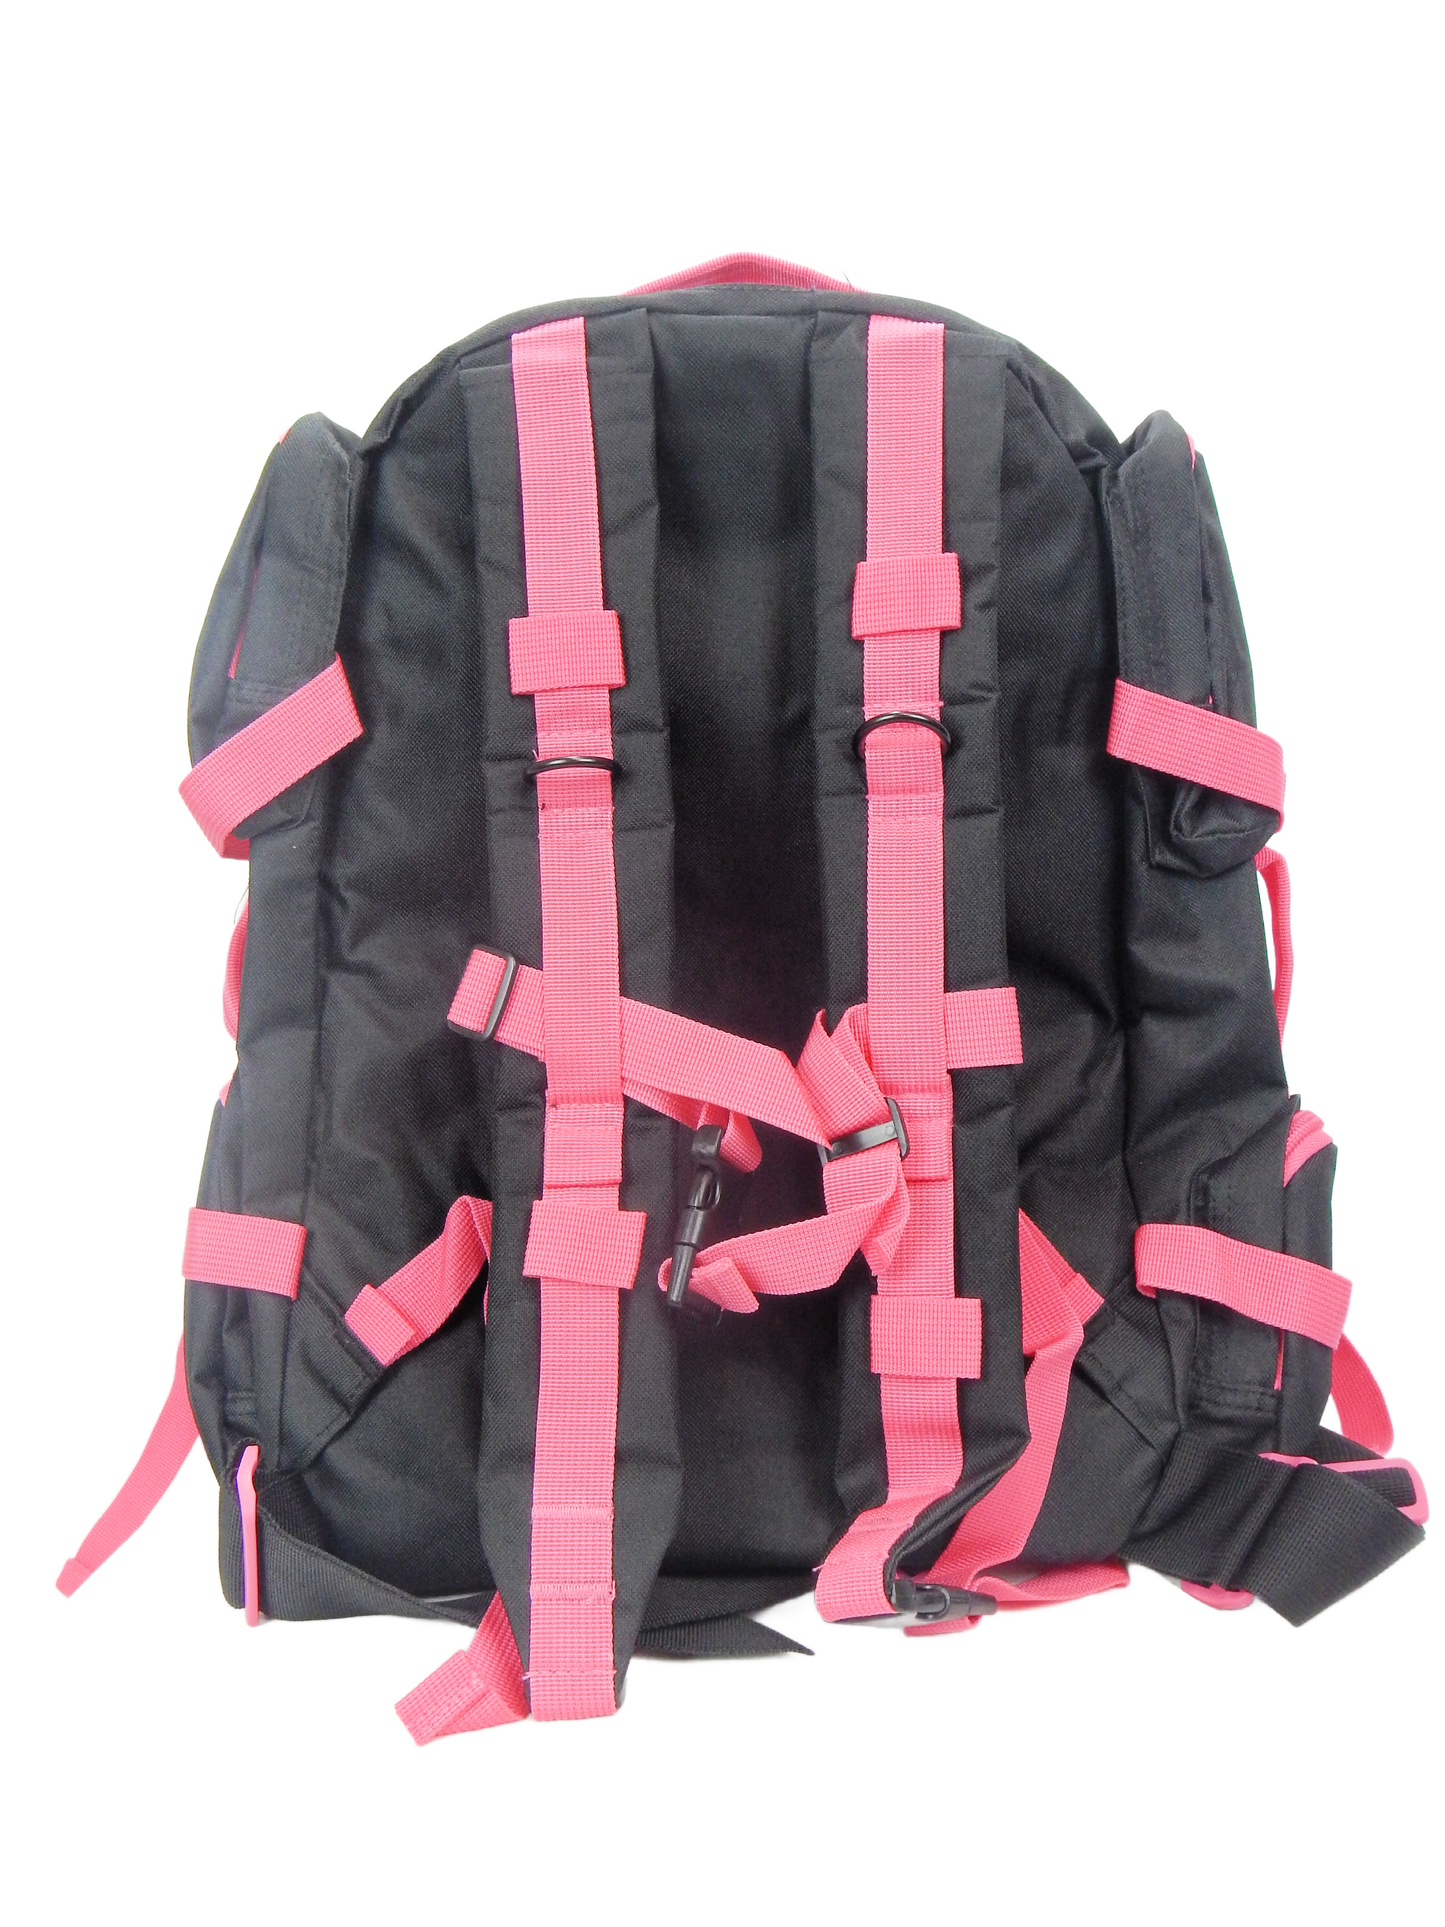 Tactical Backpack - 21 Liter